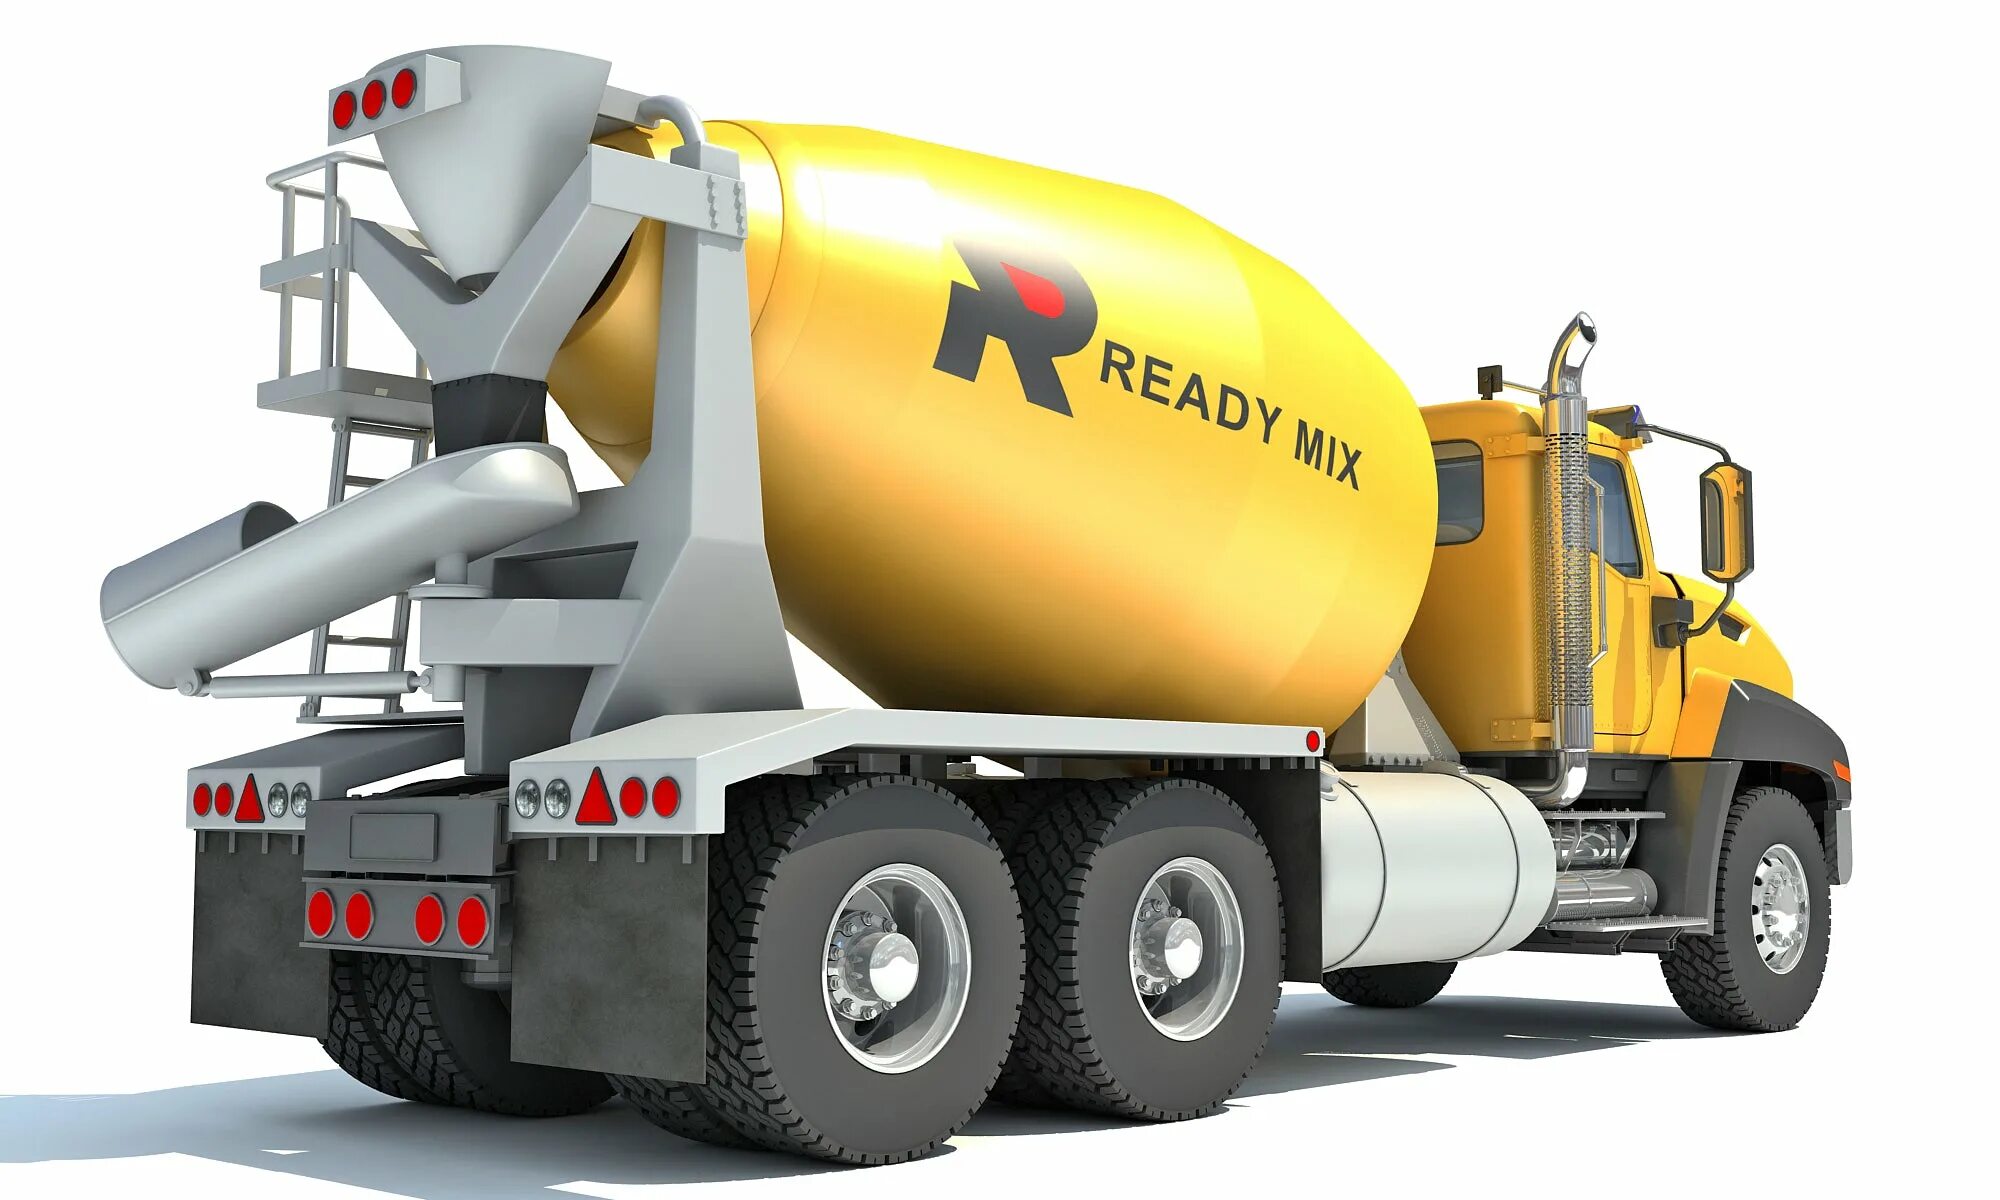 Автобетоносмеситель Pegaso cuadradas 2089 Mixer. Бетономешалка Concrete Mixer. Машина Truck Concrete Mixer. Sitrak автобетоносмеситель. Concrete mixer